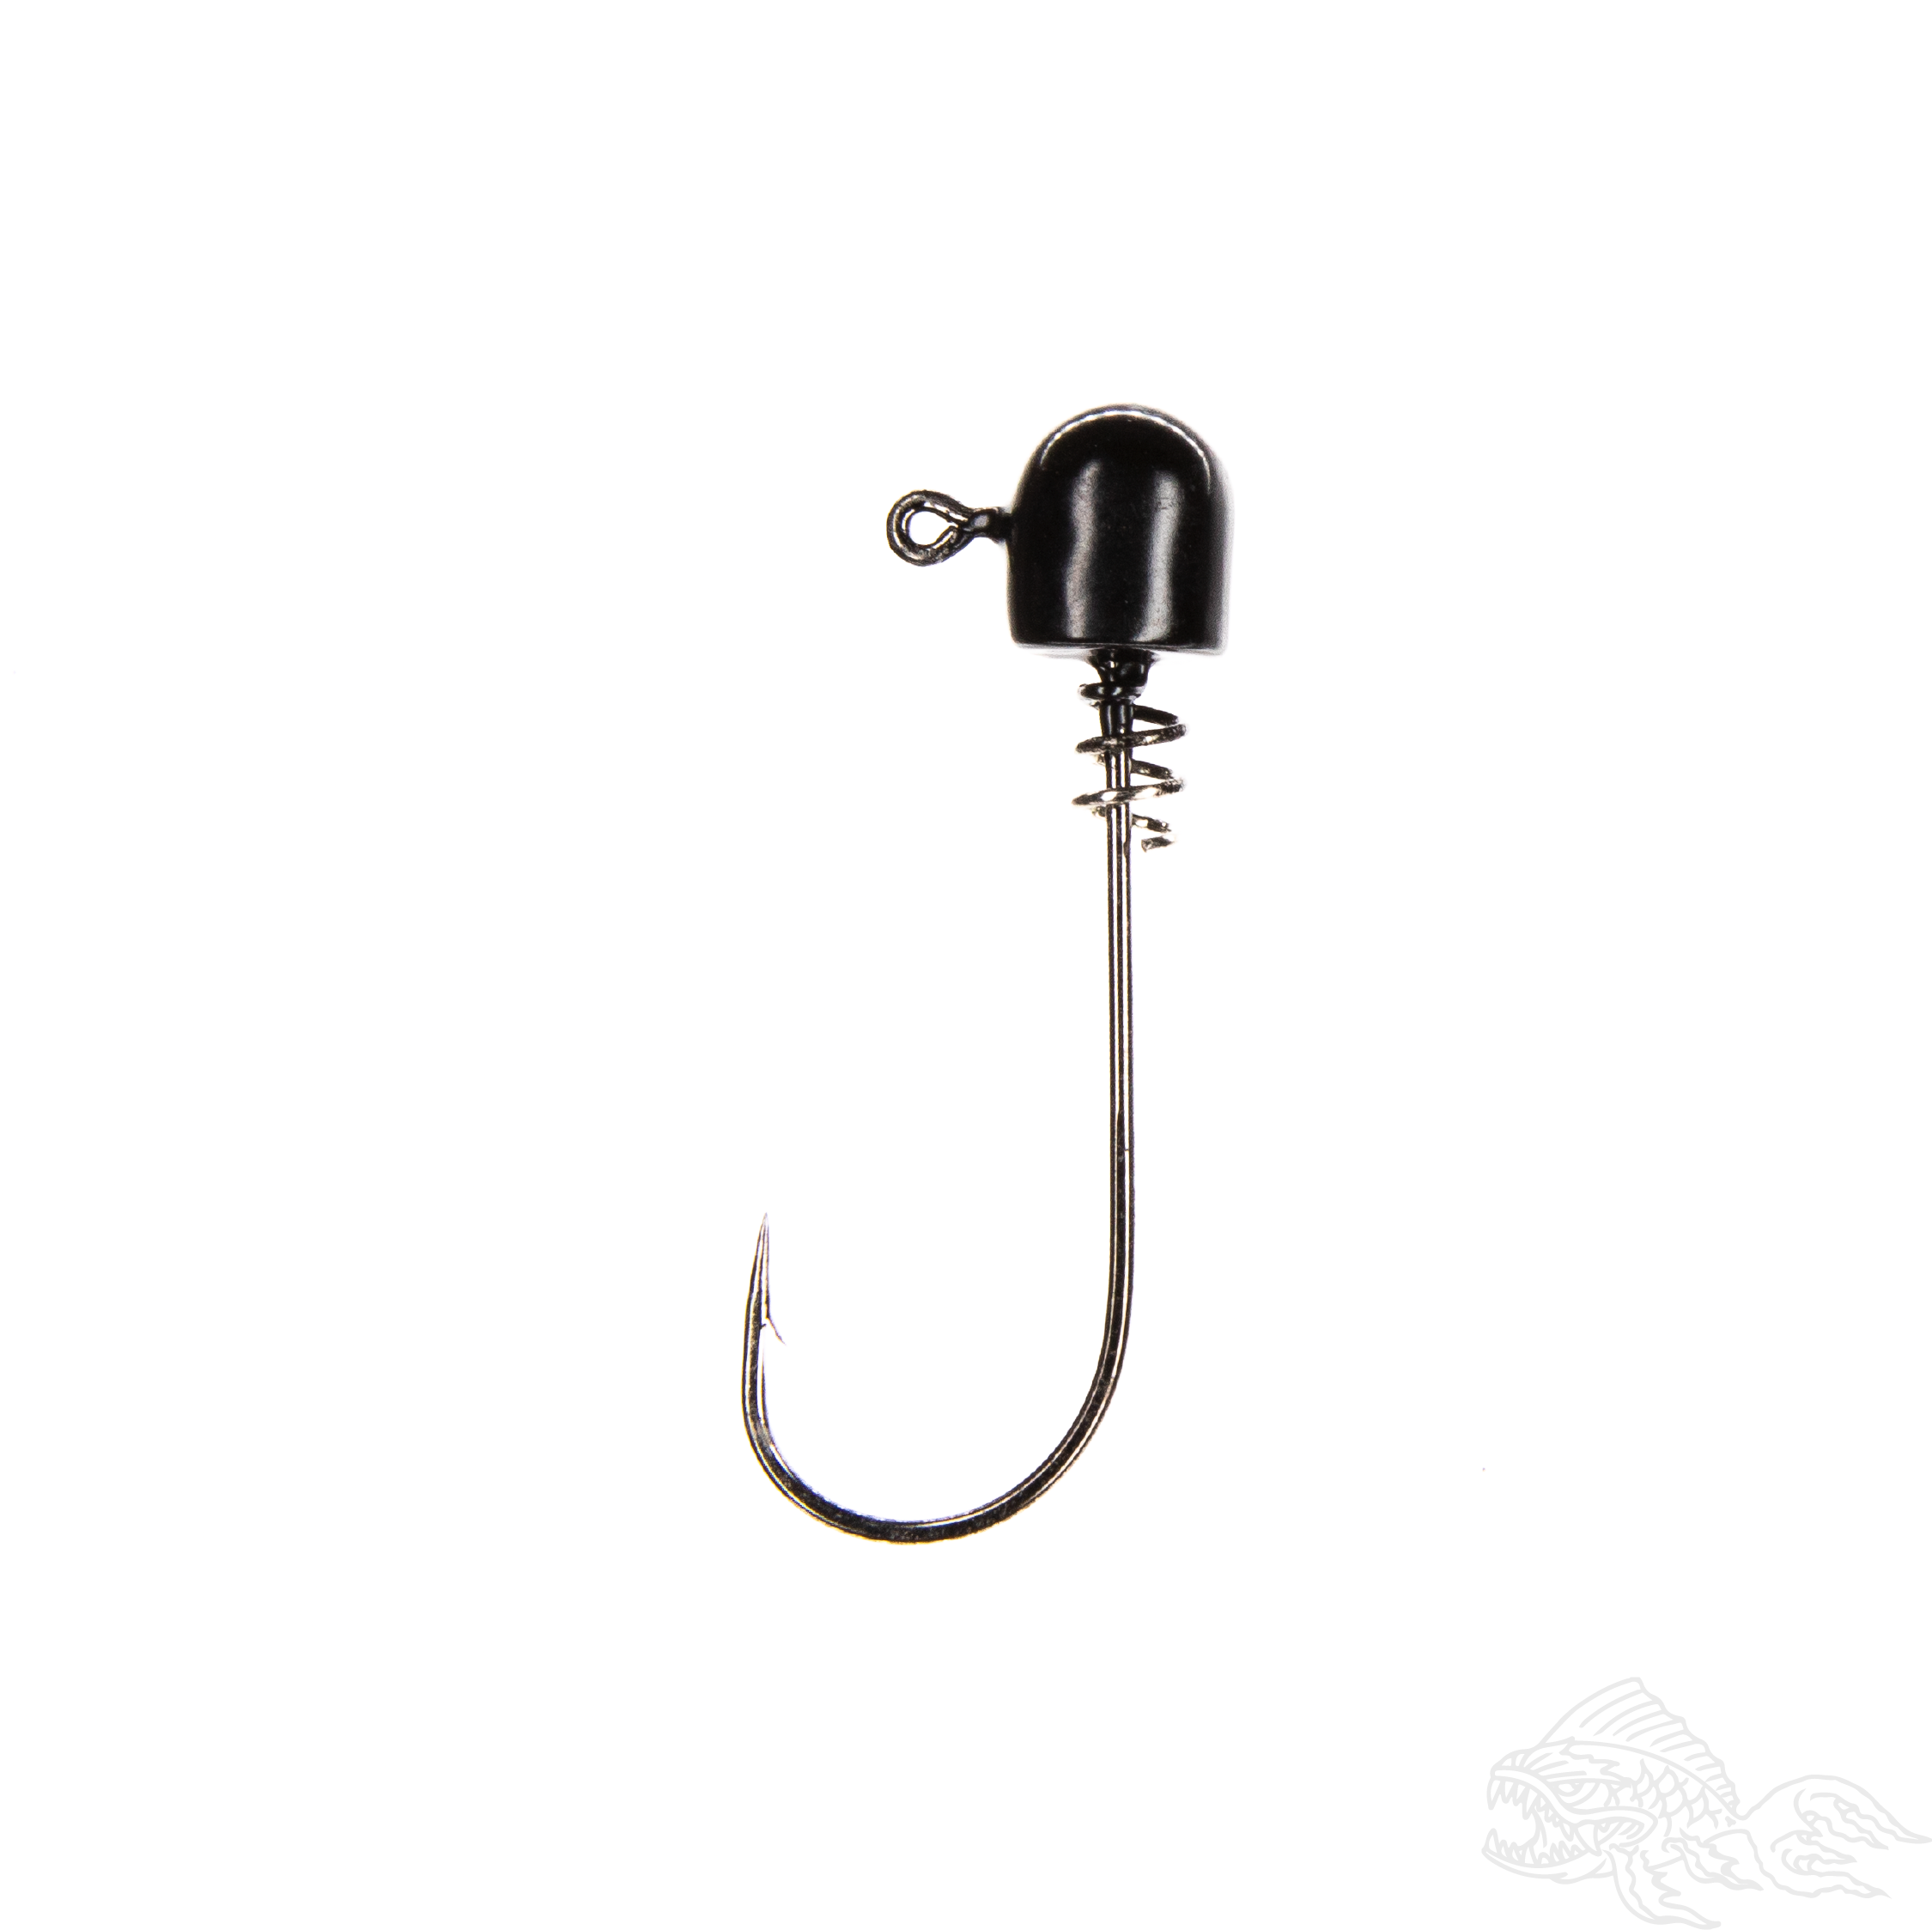 28D Screw Lock Swim Bait Hook – The Jigman